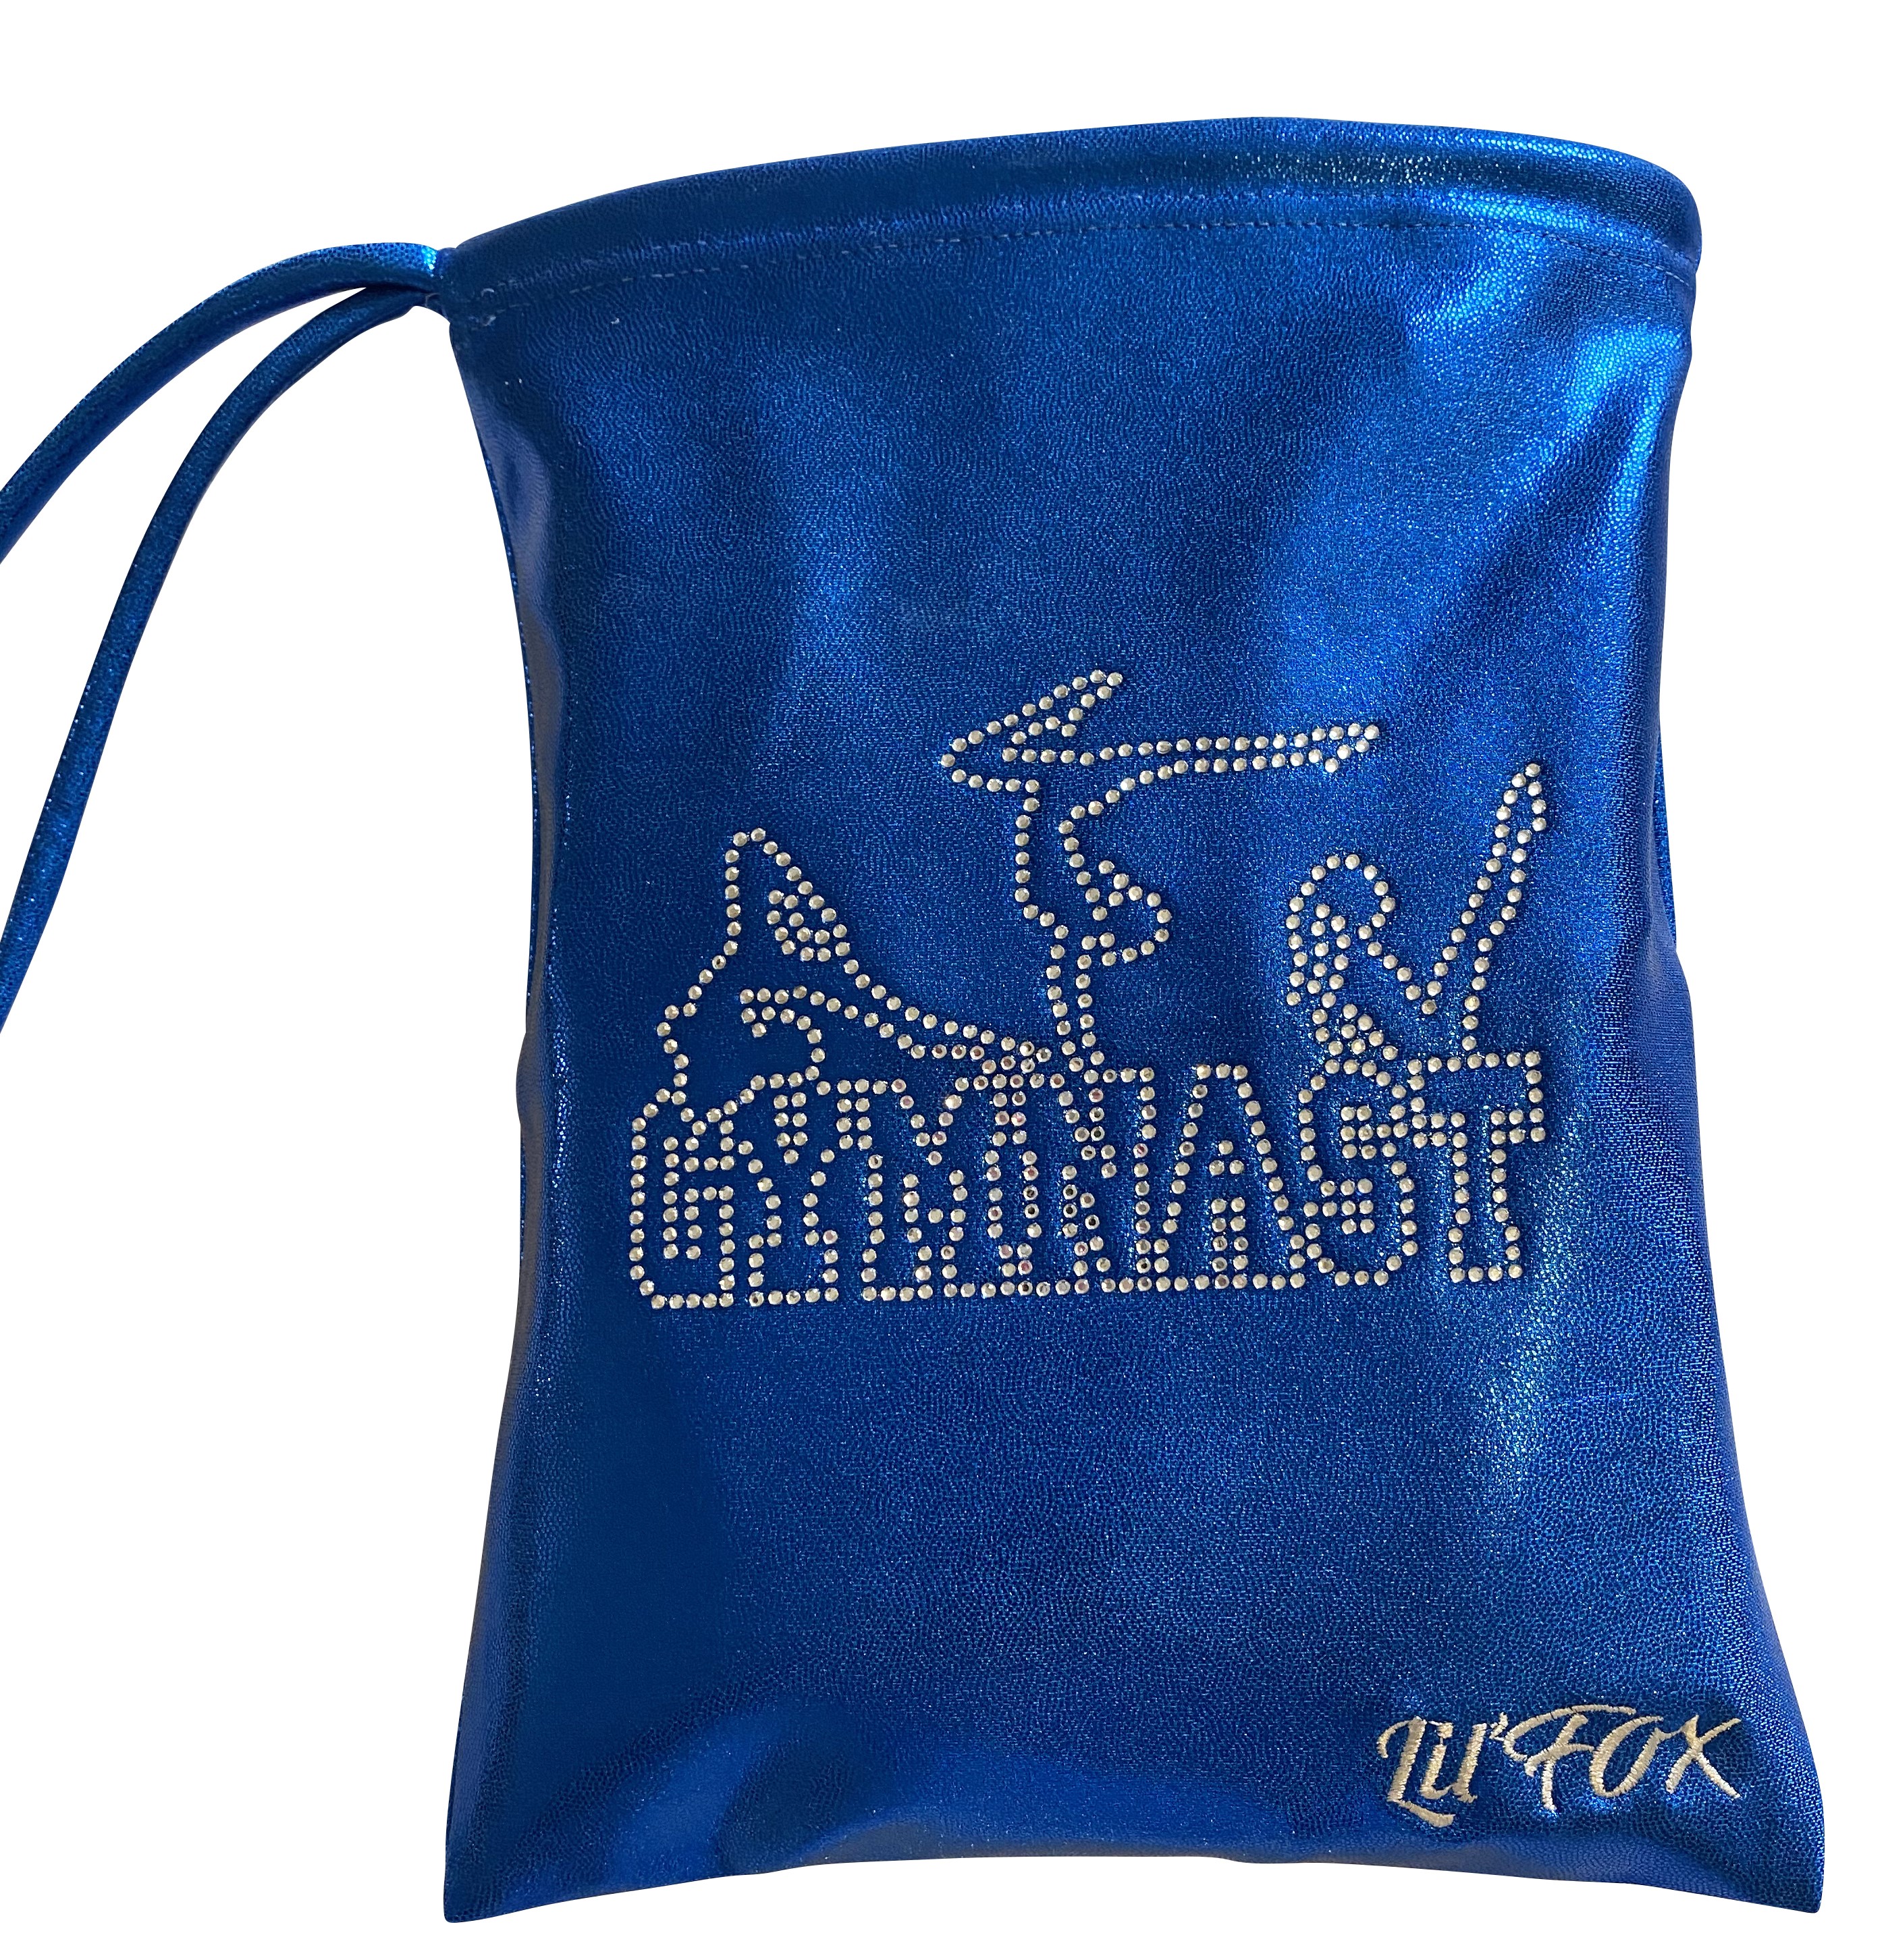 ROYAL BLUE SHINY MYST GYMNAST GRIP BAG 8x10"